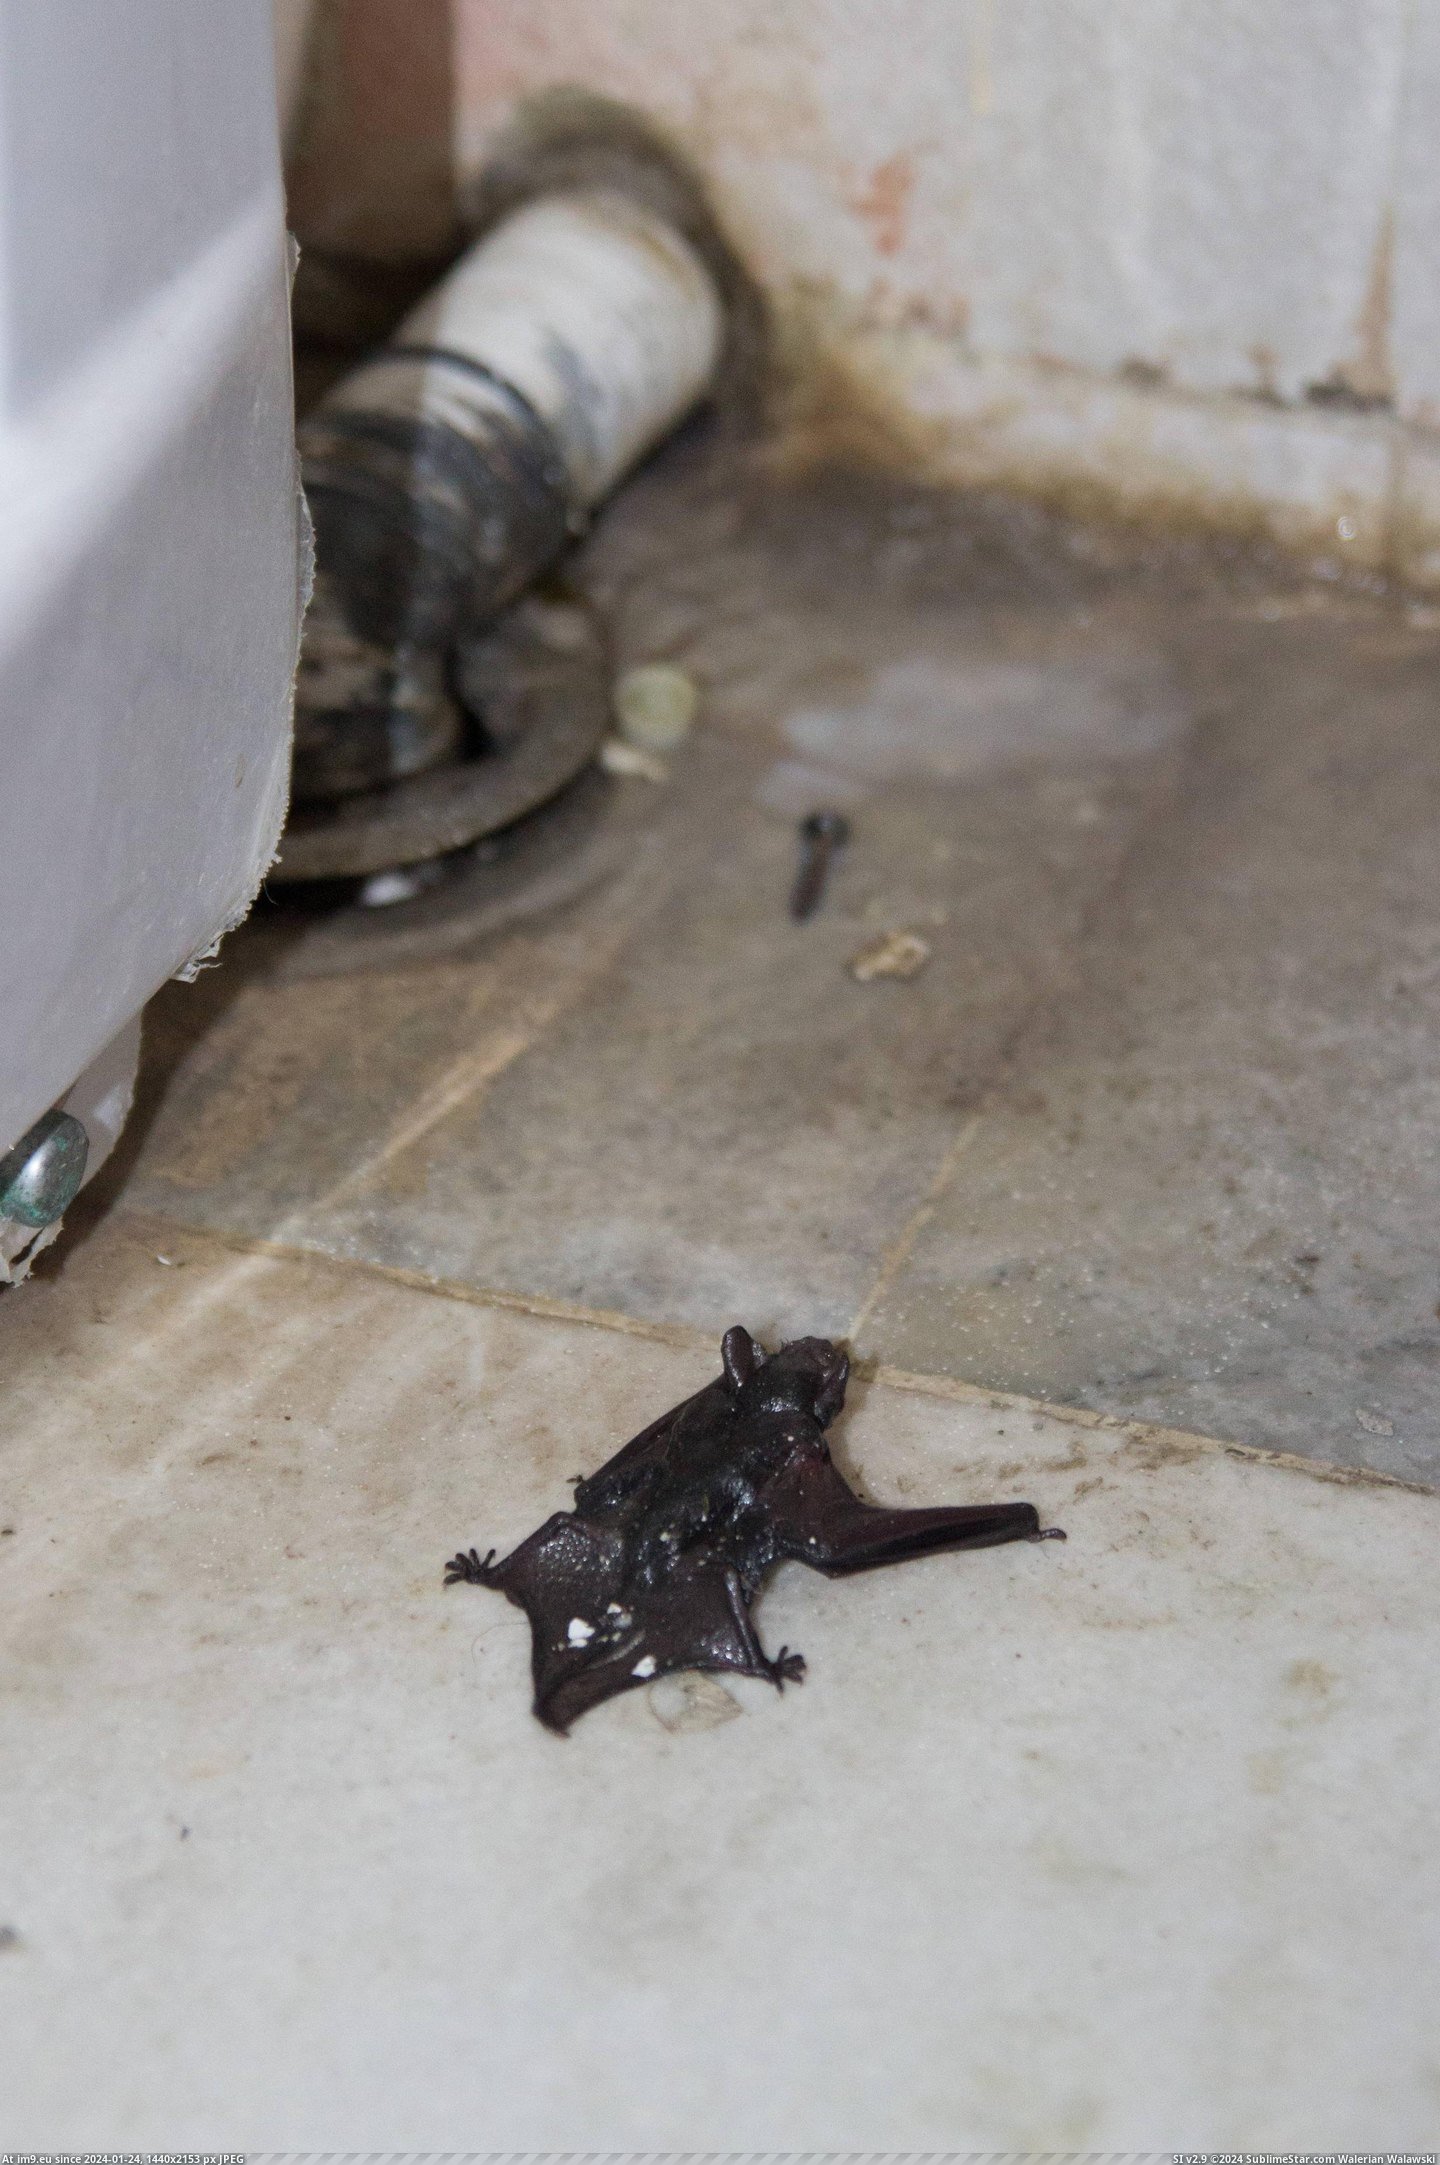 #Wtf #Out #Drain #Bat #Crawled #Bathroom #Yes [Wtf] A bat crawled out of my bathroom drain. Yes, a bat. 1 Pic. (Obraz z album My r/WTF favs))